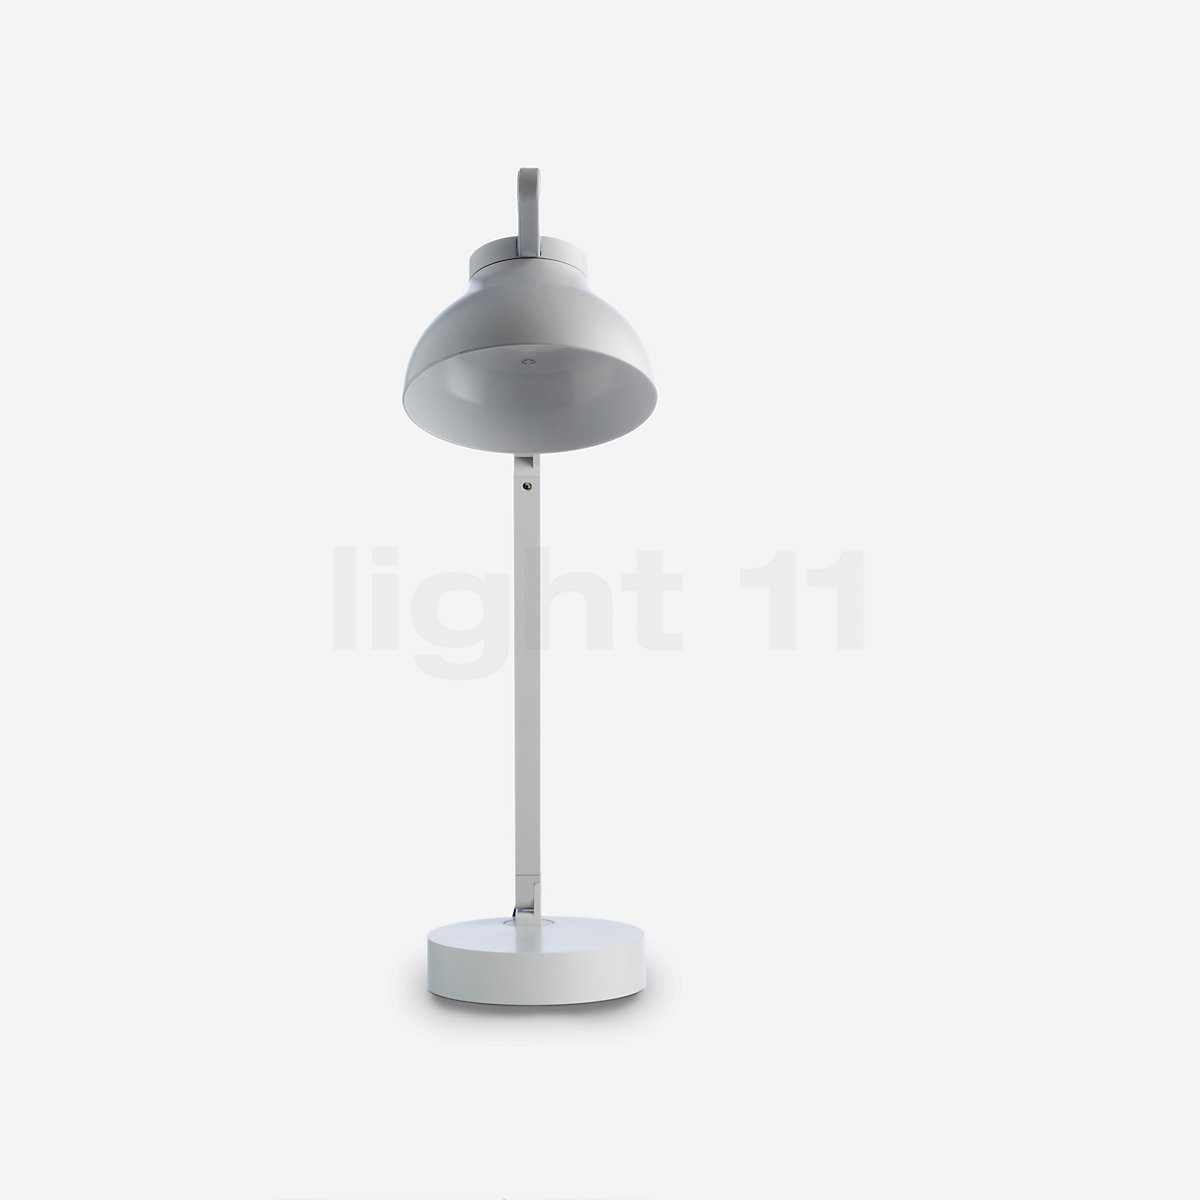 HAY PC Double Arm Lampe de table avec pince de serrage LED